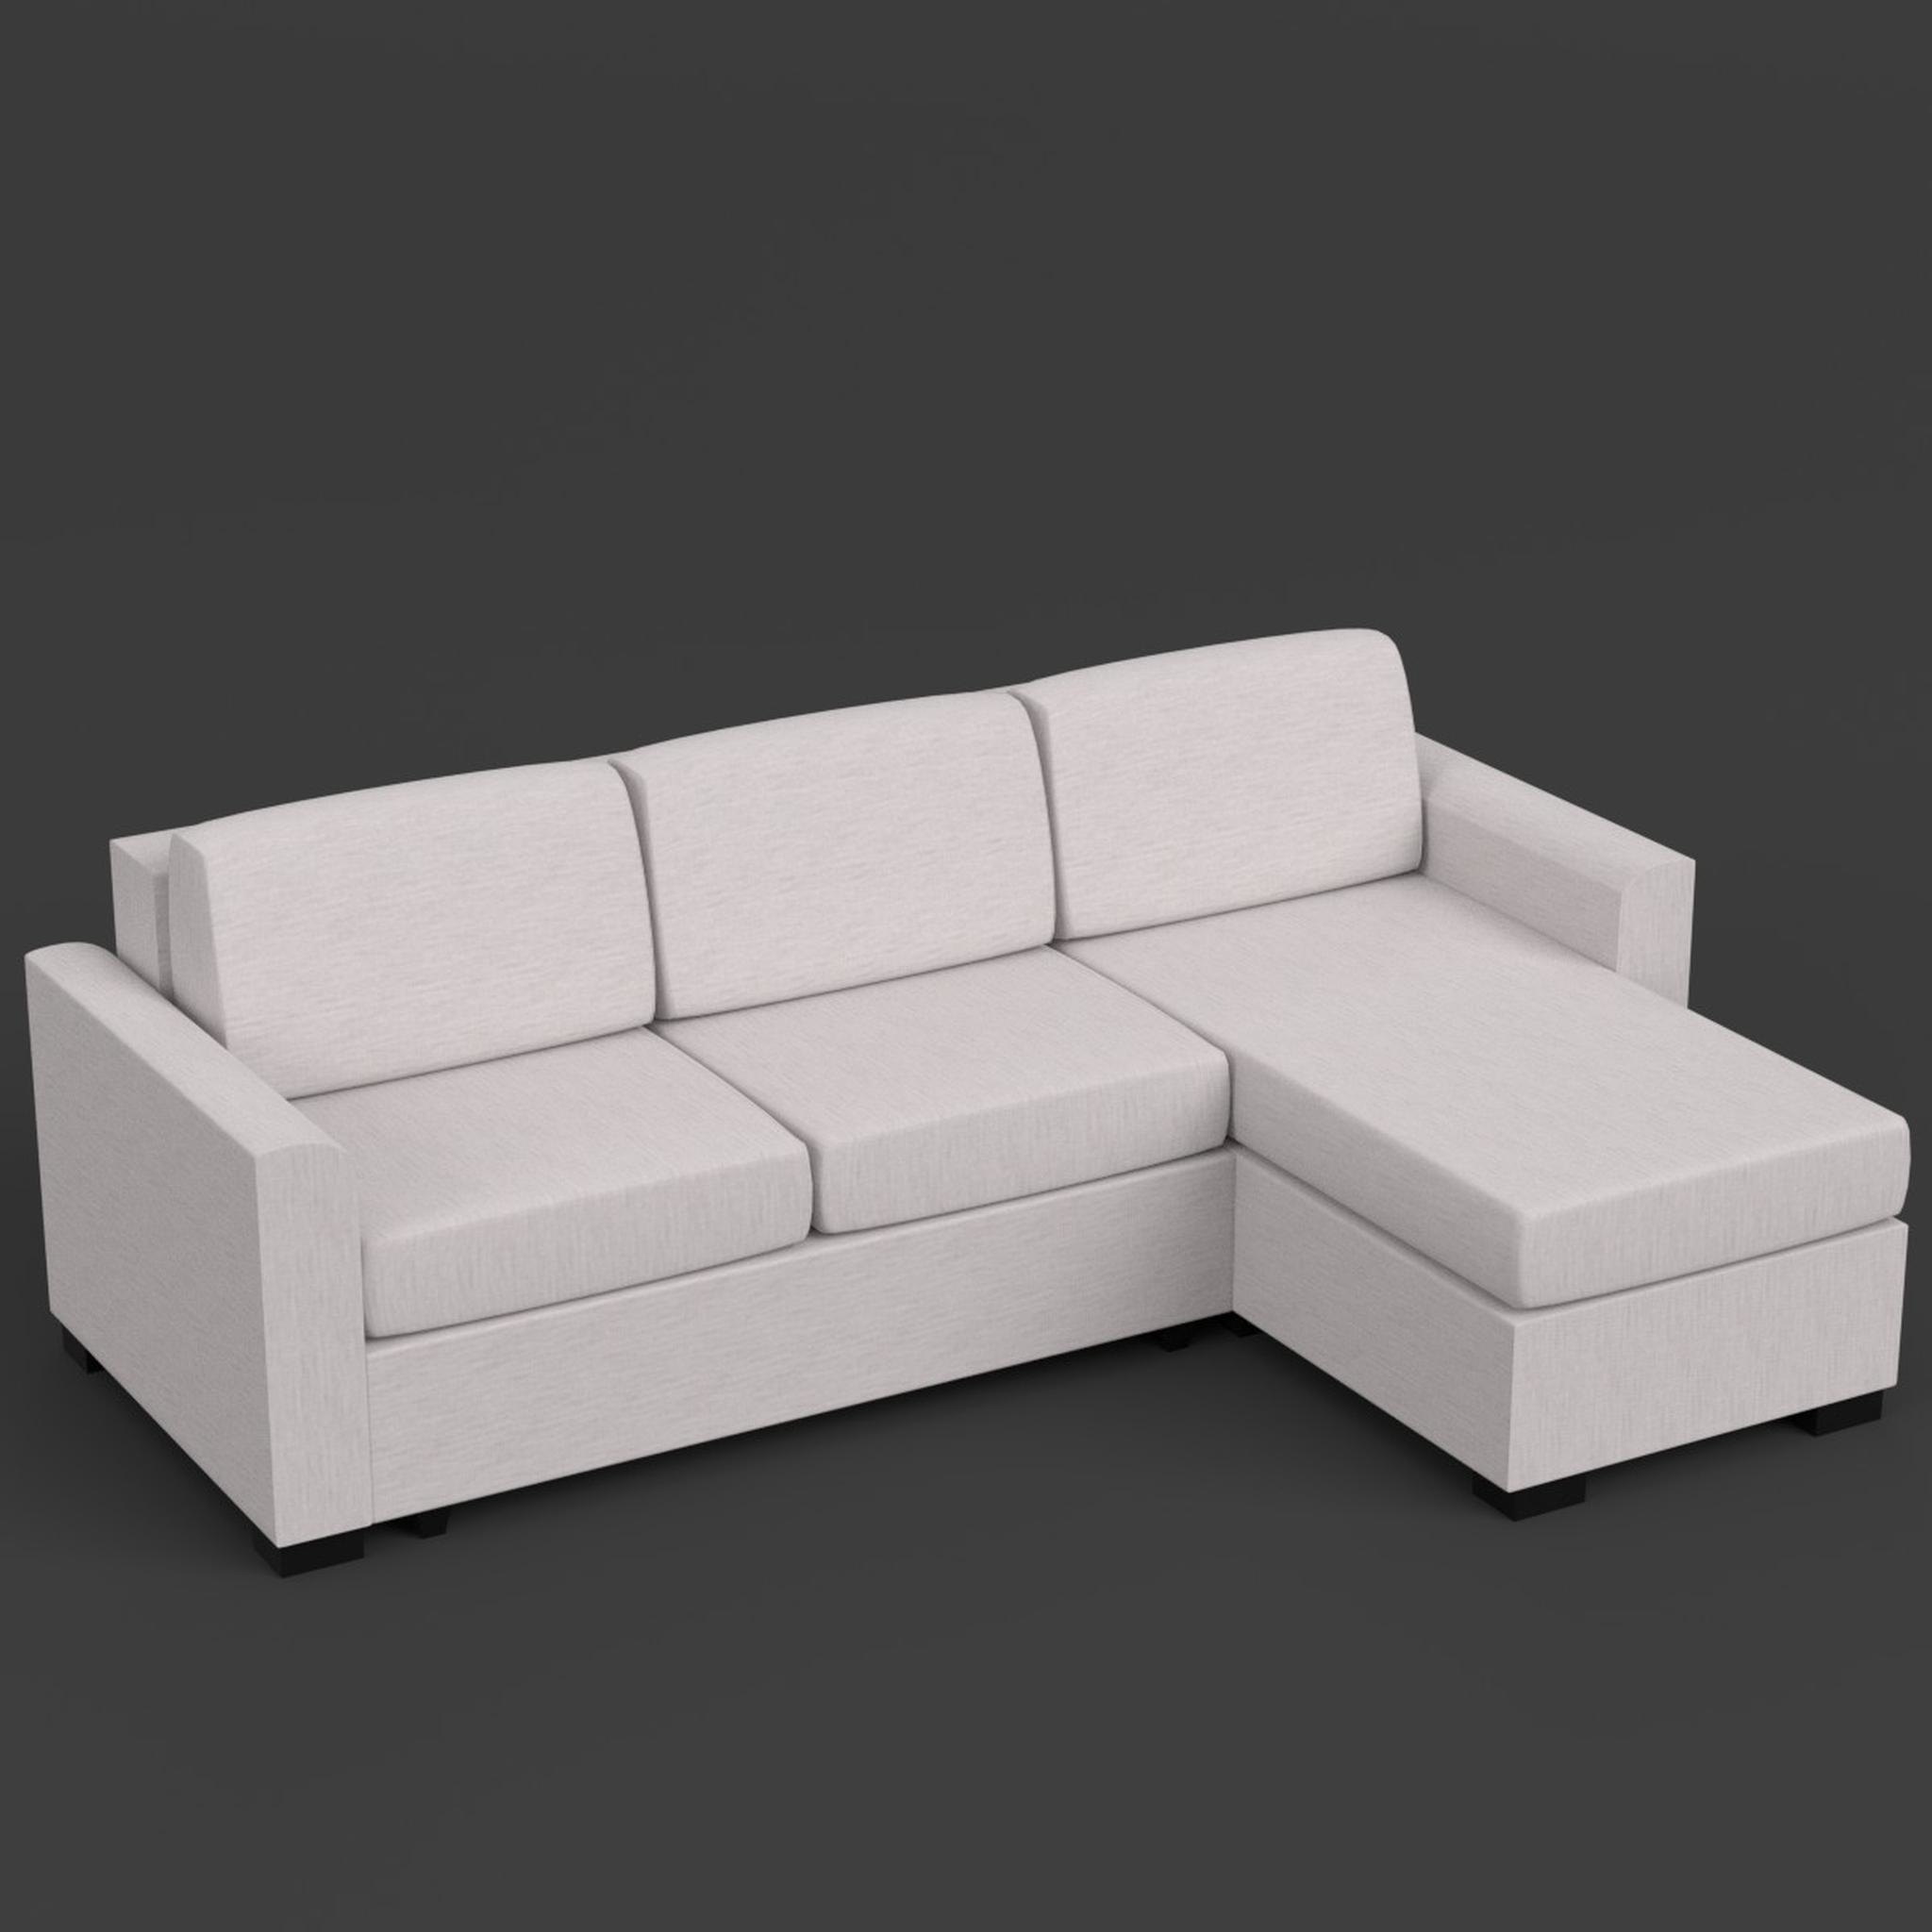 моделирование дивана в блендер